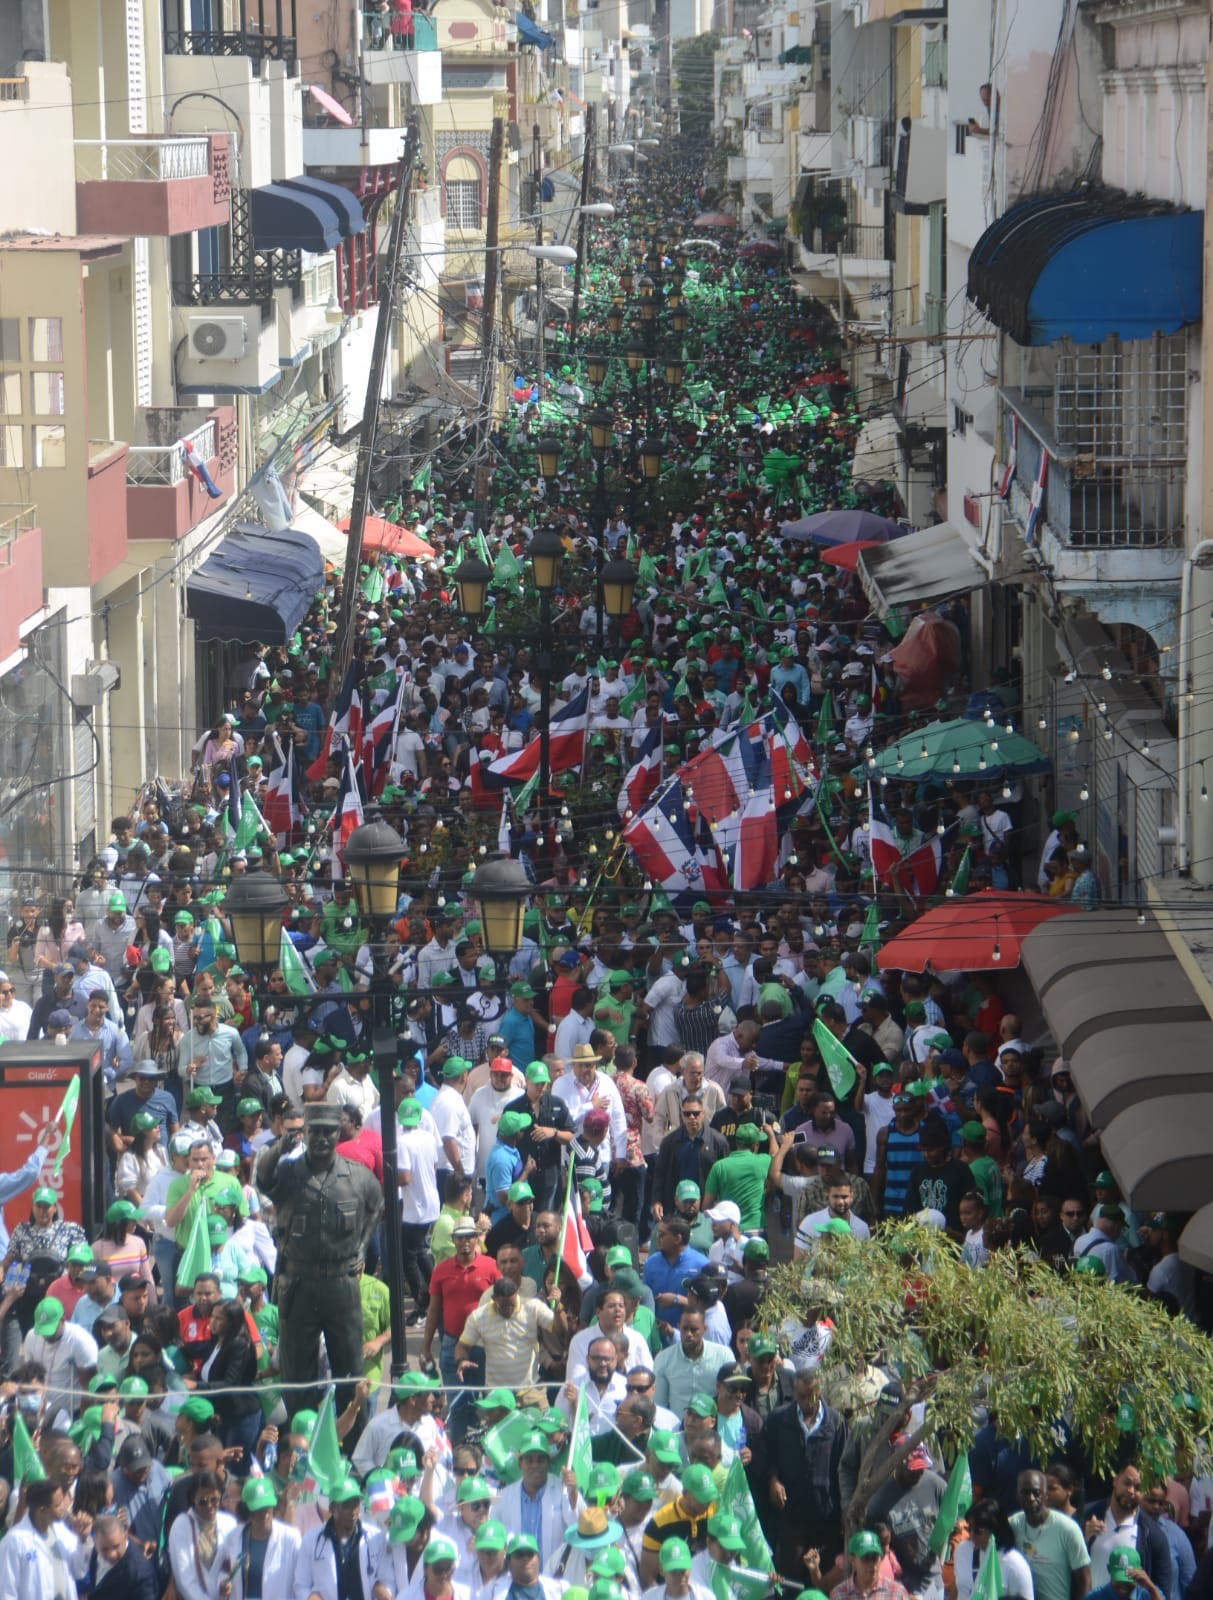 Miles de jóvenes de la Fuerza del Pueblo realizan desfile cívico-cultural